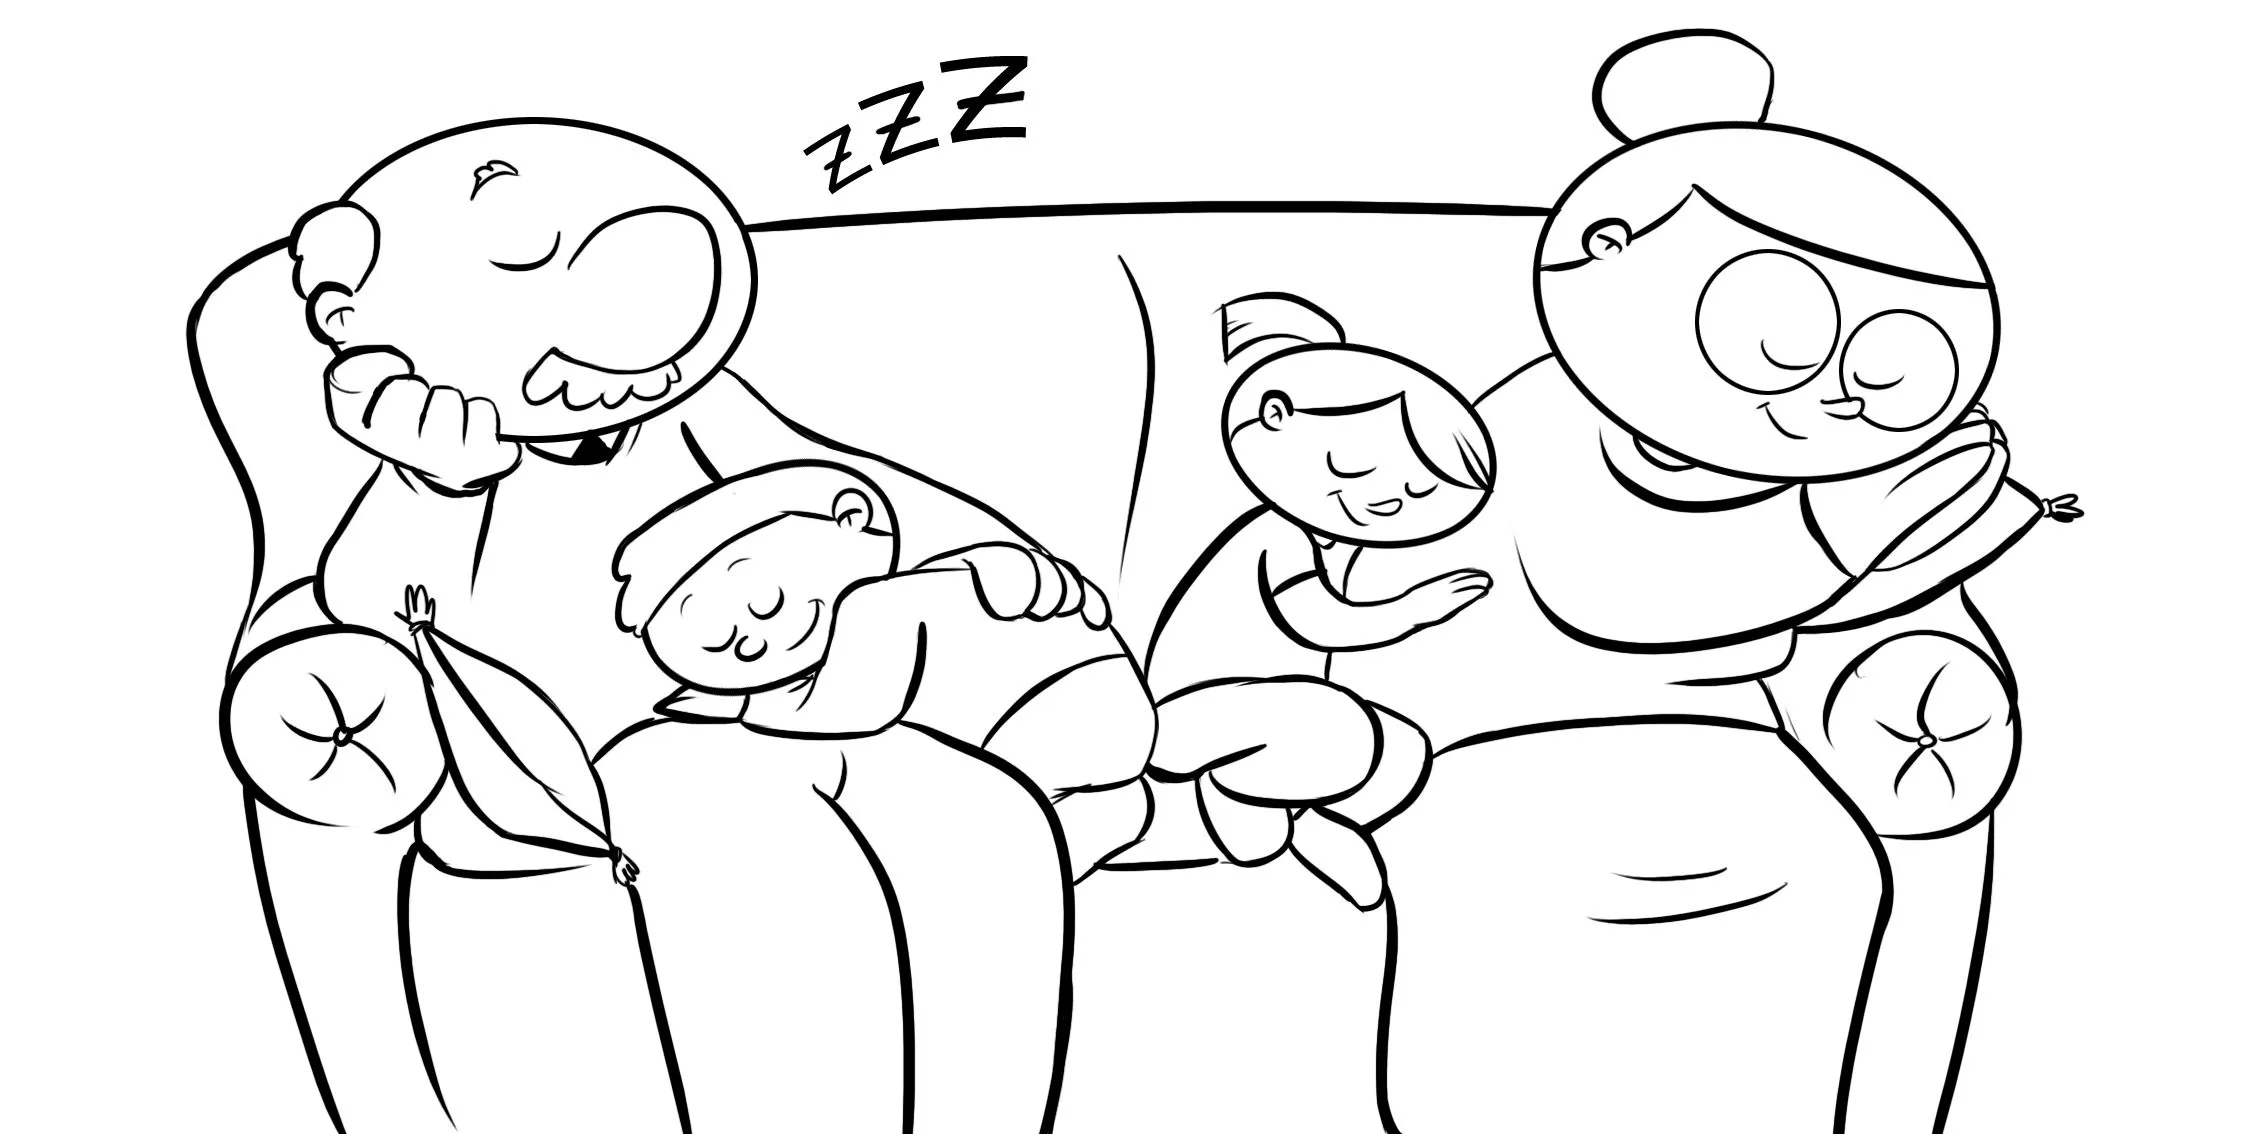  ... niños: Colorea a unos abuelos durmiendo en el sofá con sus nietos